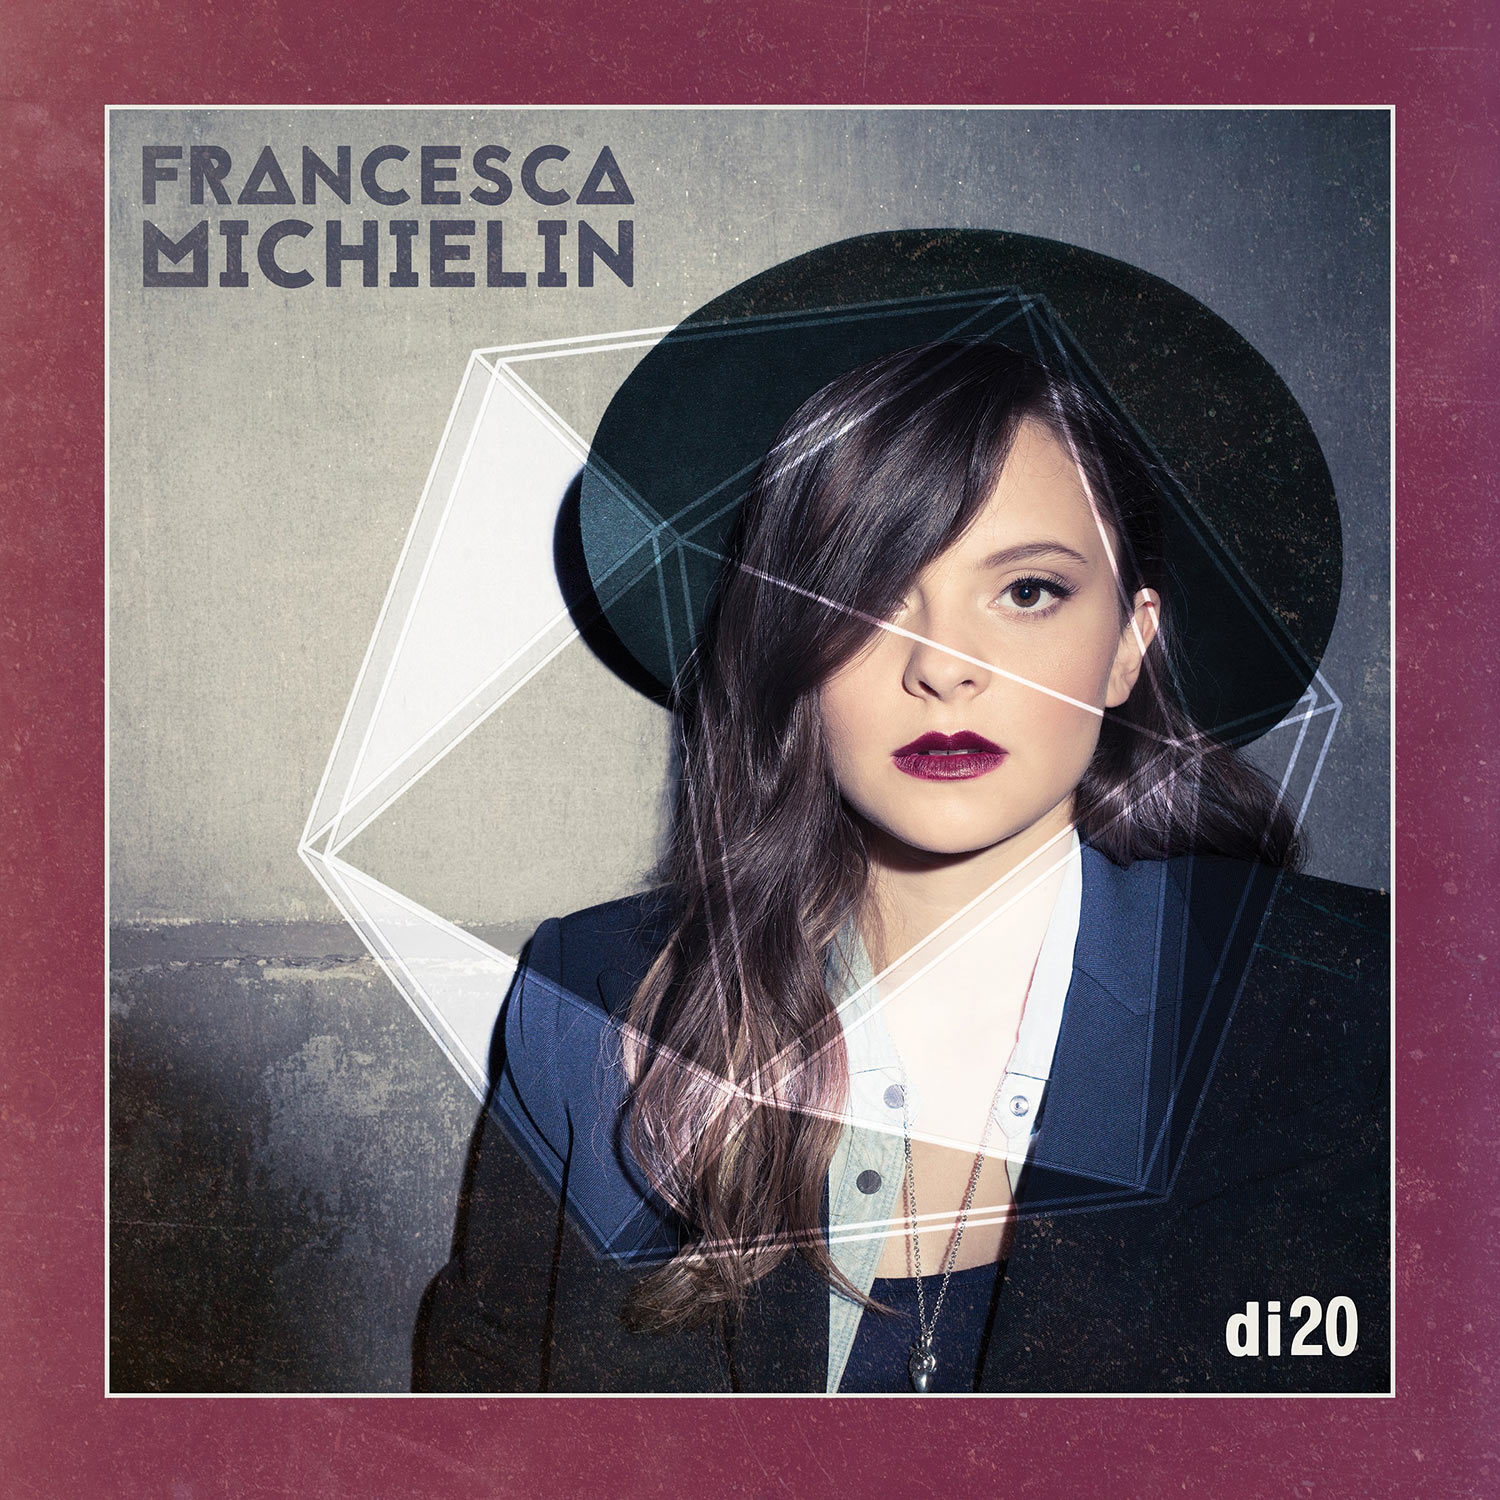 http://popsoap.it/wp-content/uploads/2015/10/Francesca-Michielin-cover-album.jpg